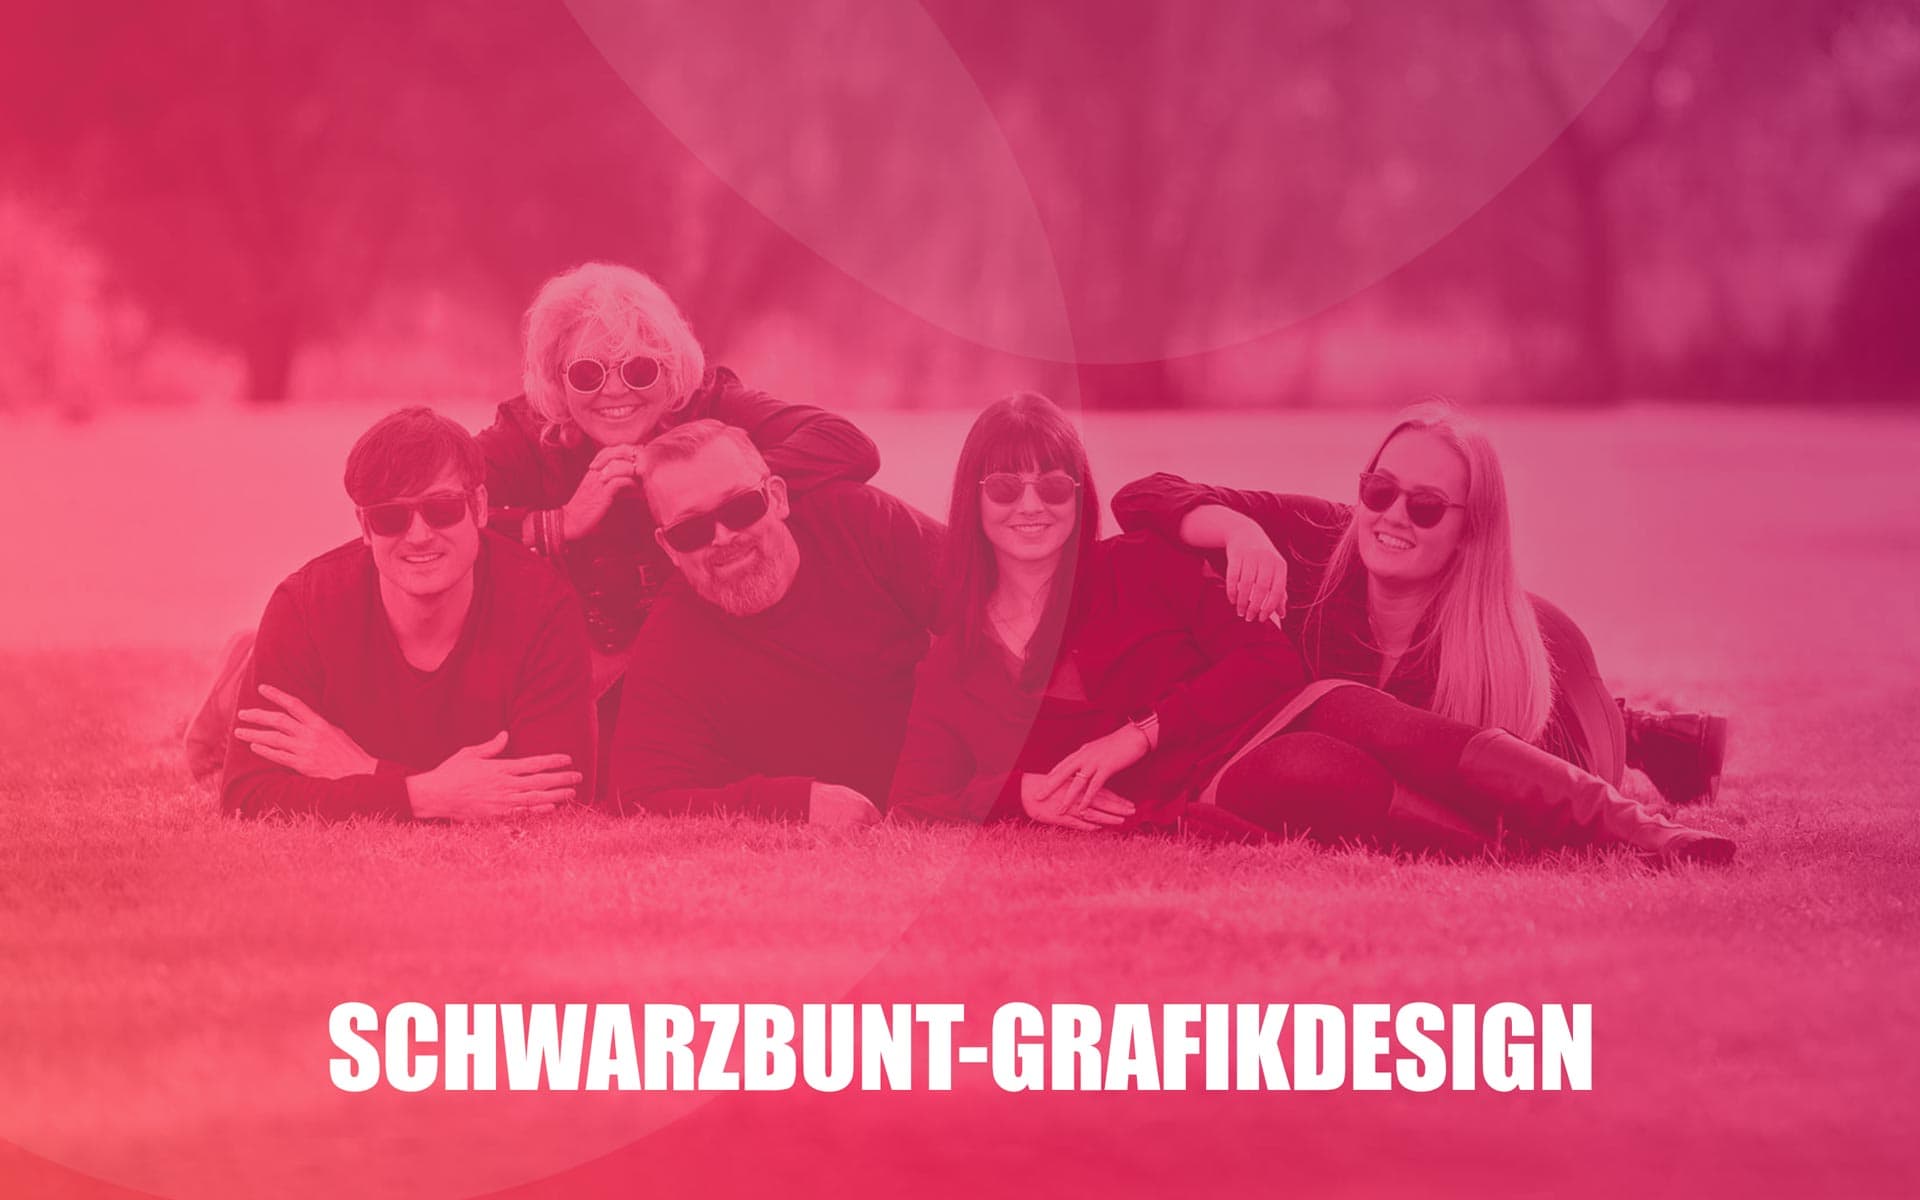 (c) Schwarzbunt-grafikdesign.de